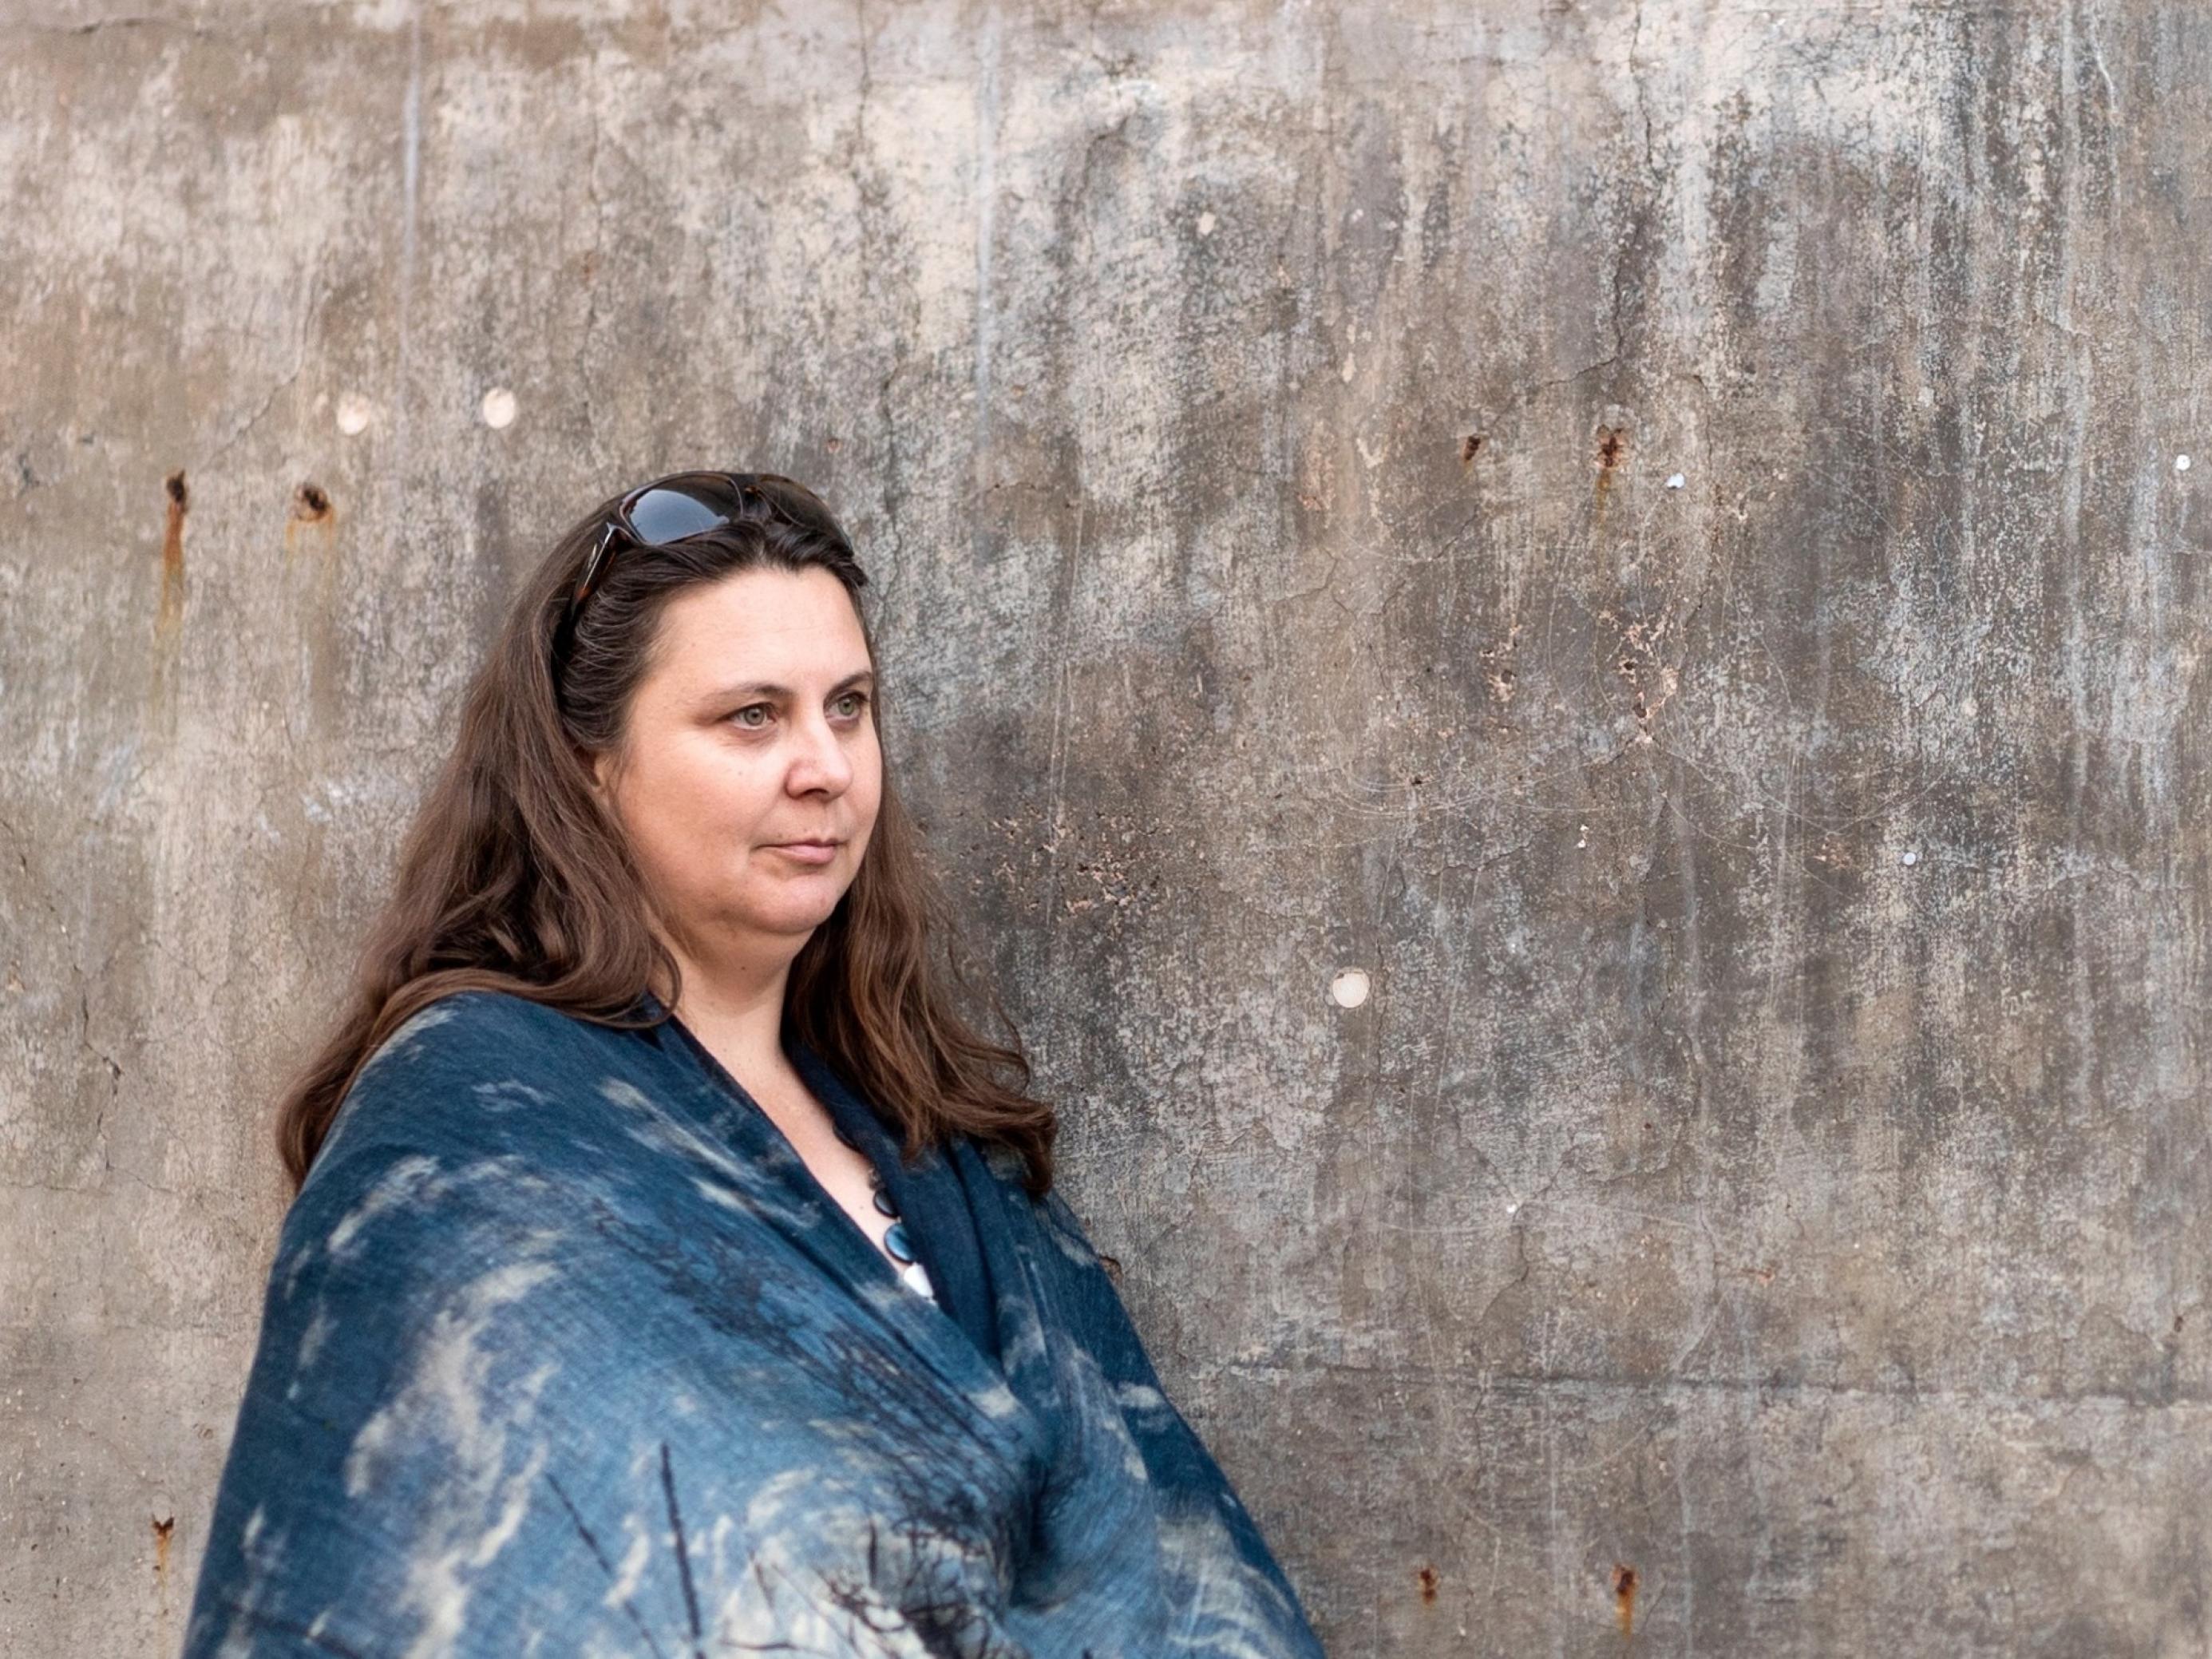 Auf dem Bild steht die Klimaforscherin Nerilie Abram in ein schönes blaues Tuch gehüllt vor einer kahlen Betonwand. Sie schaut nachdenklich in die Ferne.